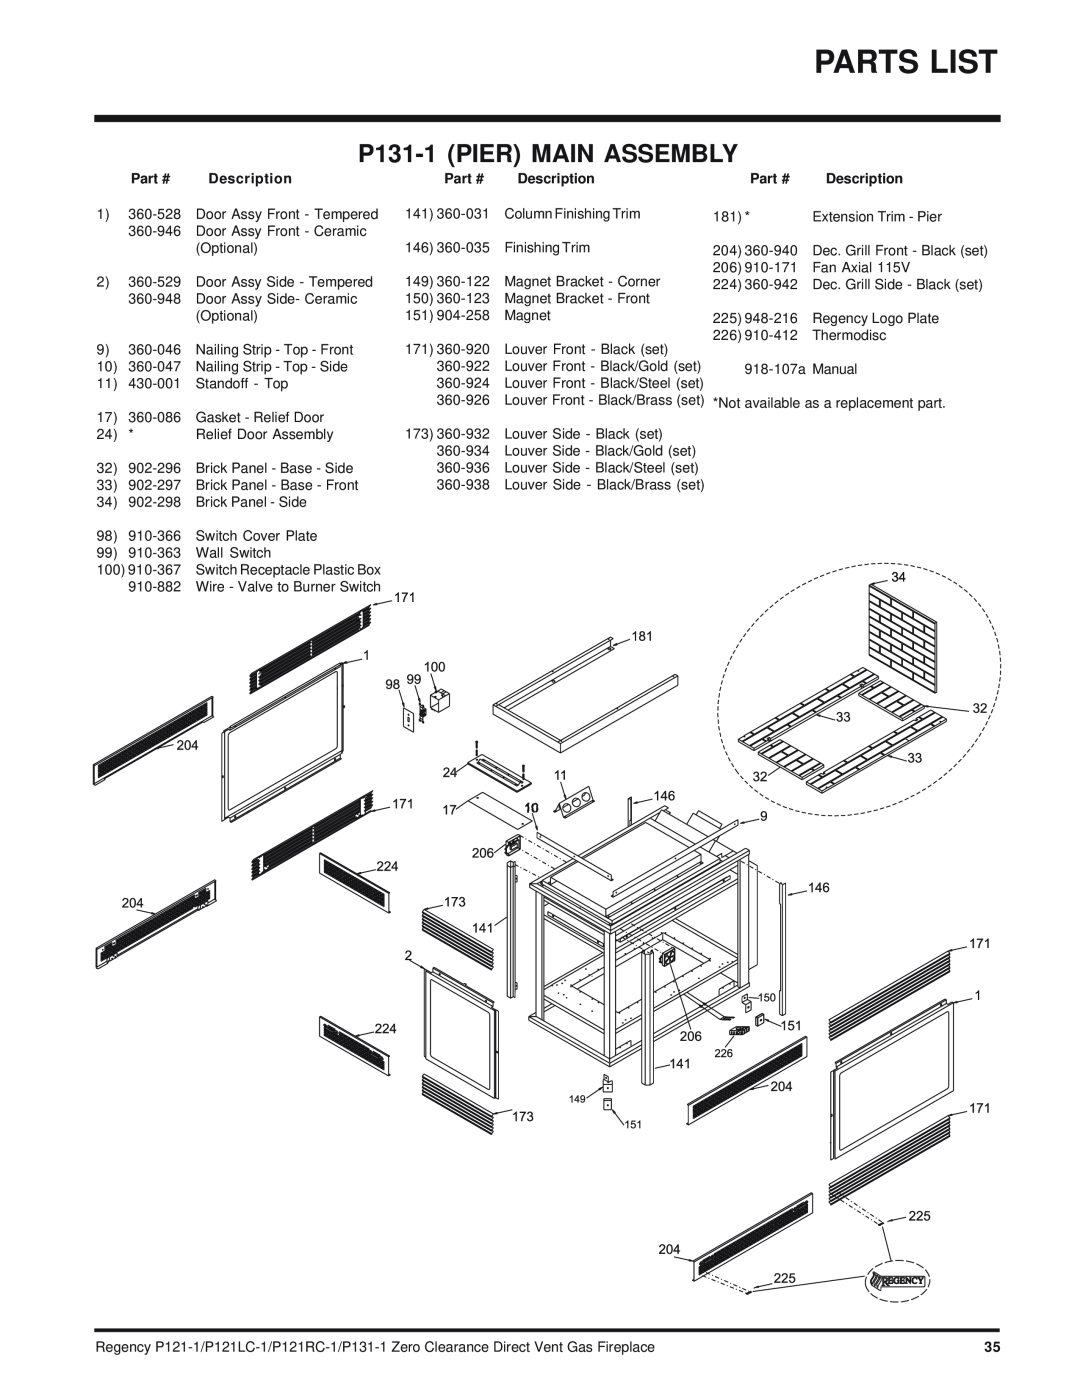 Regency P121RC, P121LC installation manual Parts List, P131-1PIER MAIN ASSEMBLY, Part #, Description 